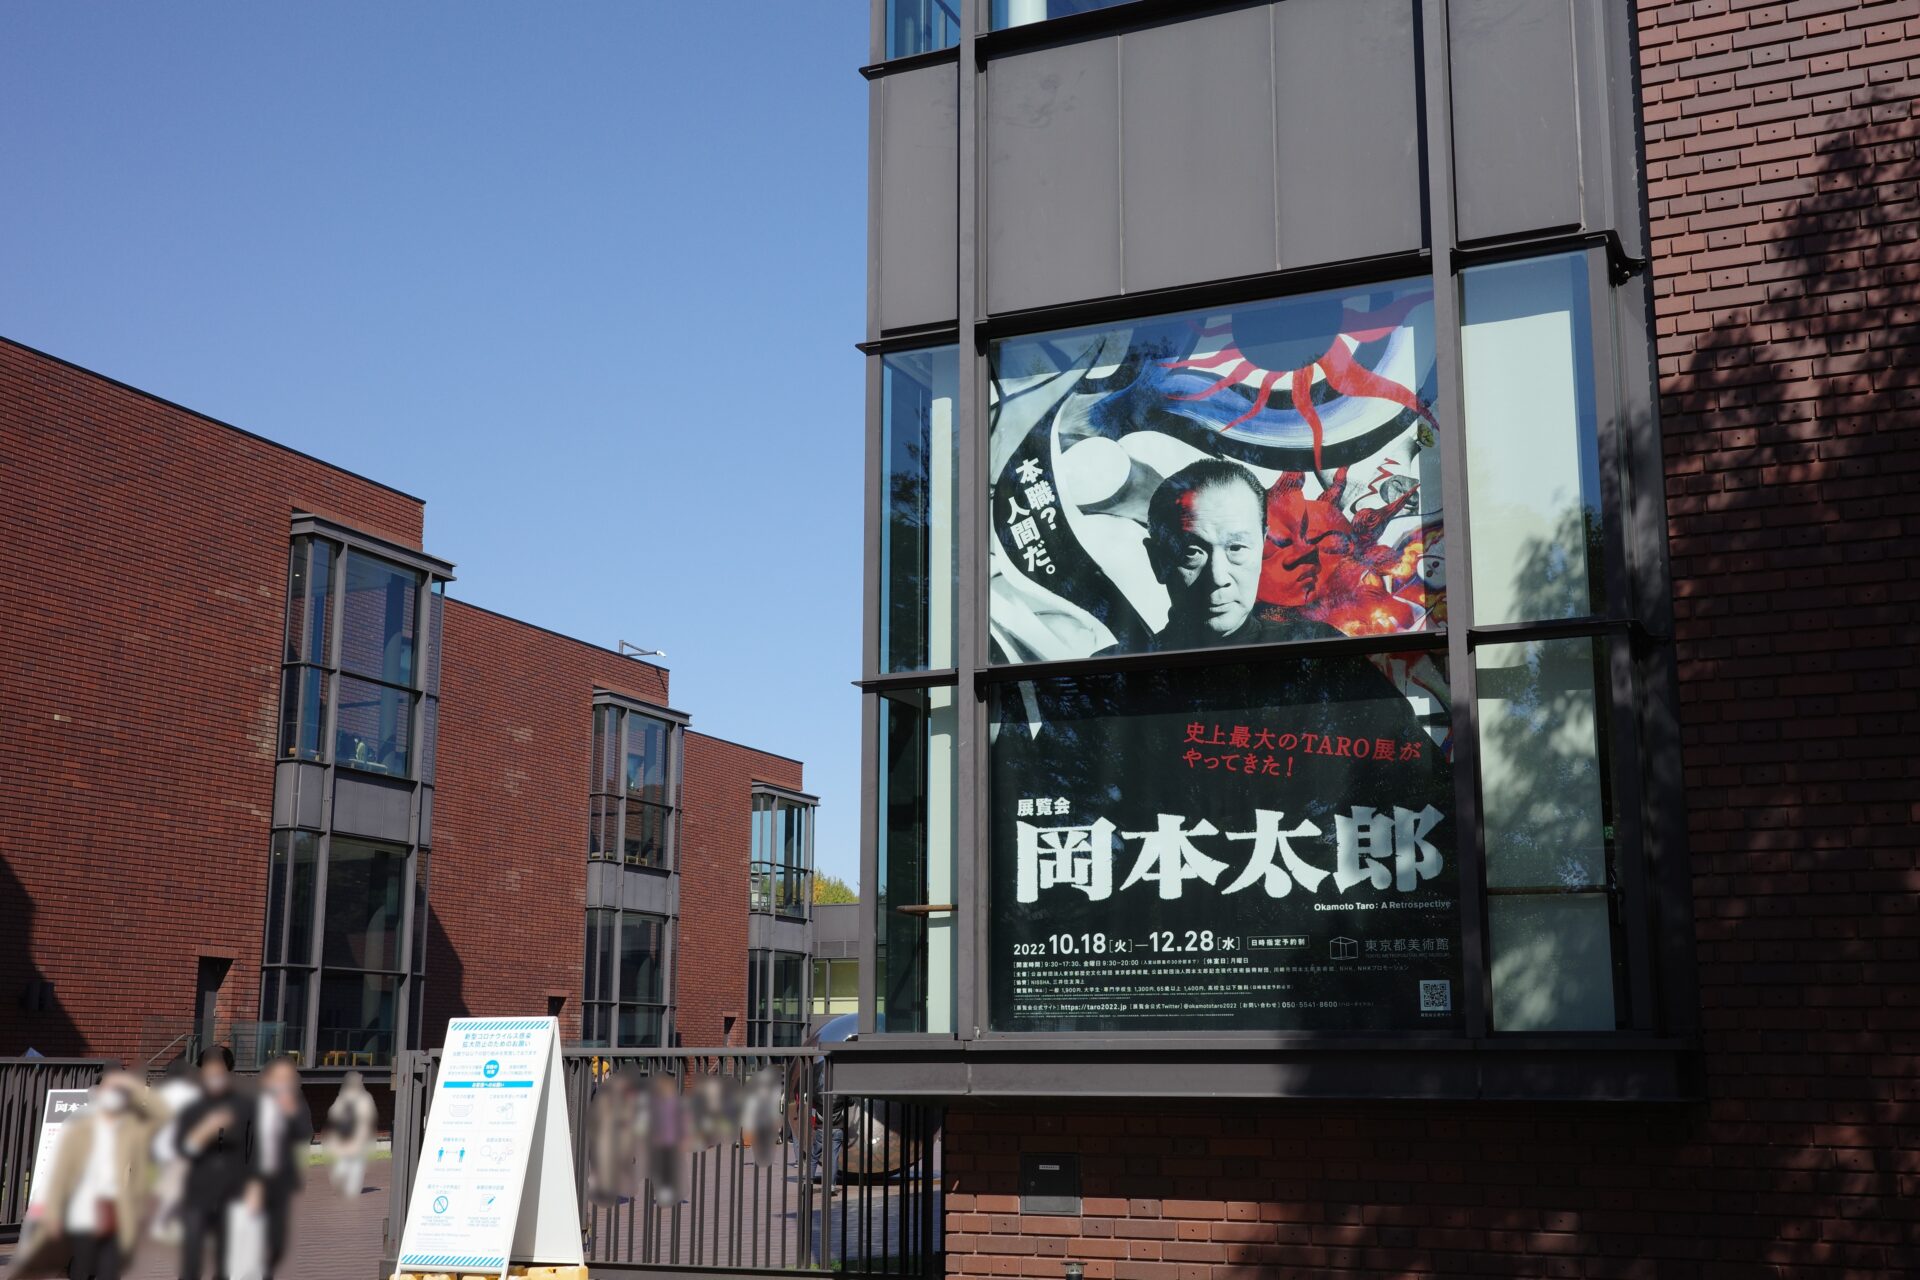 岡本太郎の史上最大規模の回顧展「展覧会 岡本太郎」が東京都美術館で開催中。多数の作品が見られ、岡本太郎の創作の足取りを順に追えるようなっており、岡本太郎についてより深く知れるよい展覧会でした。本記事は岡本太郎展のチケットや音声ガイドなどの概要、混雑状況や所要時間、グッズ情報と感想をまとめています。